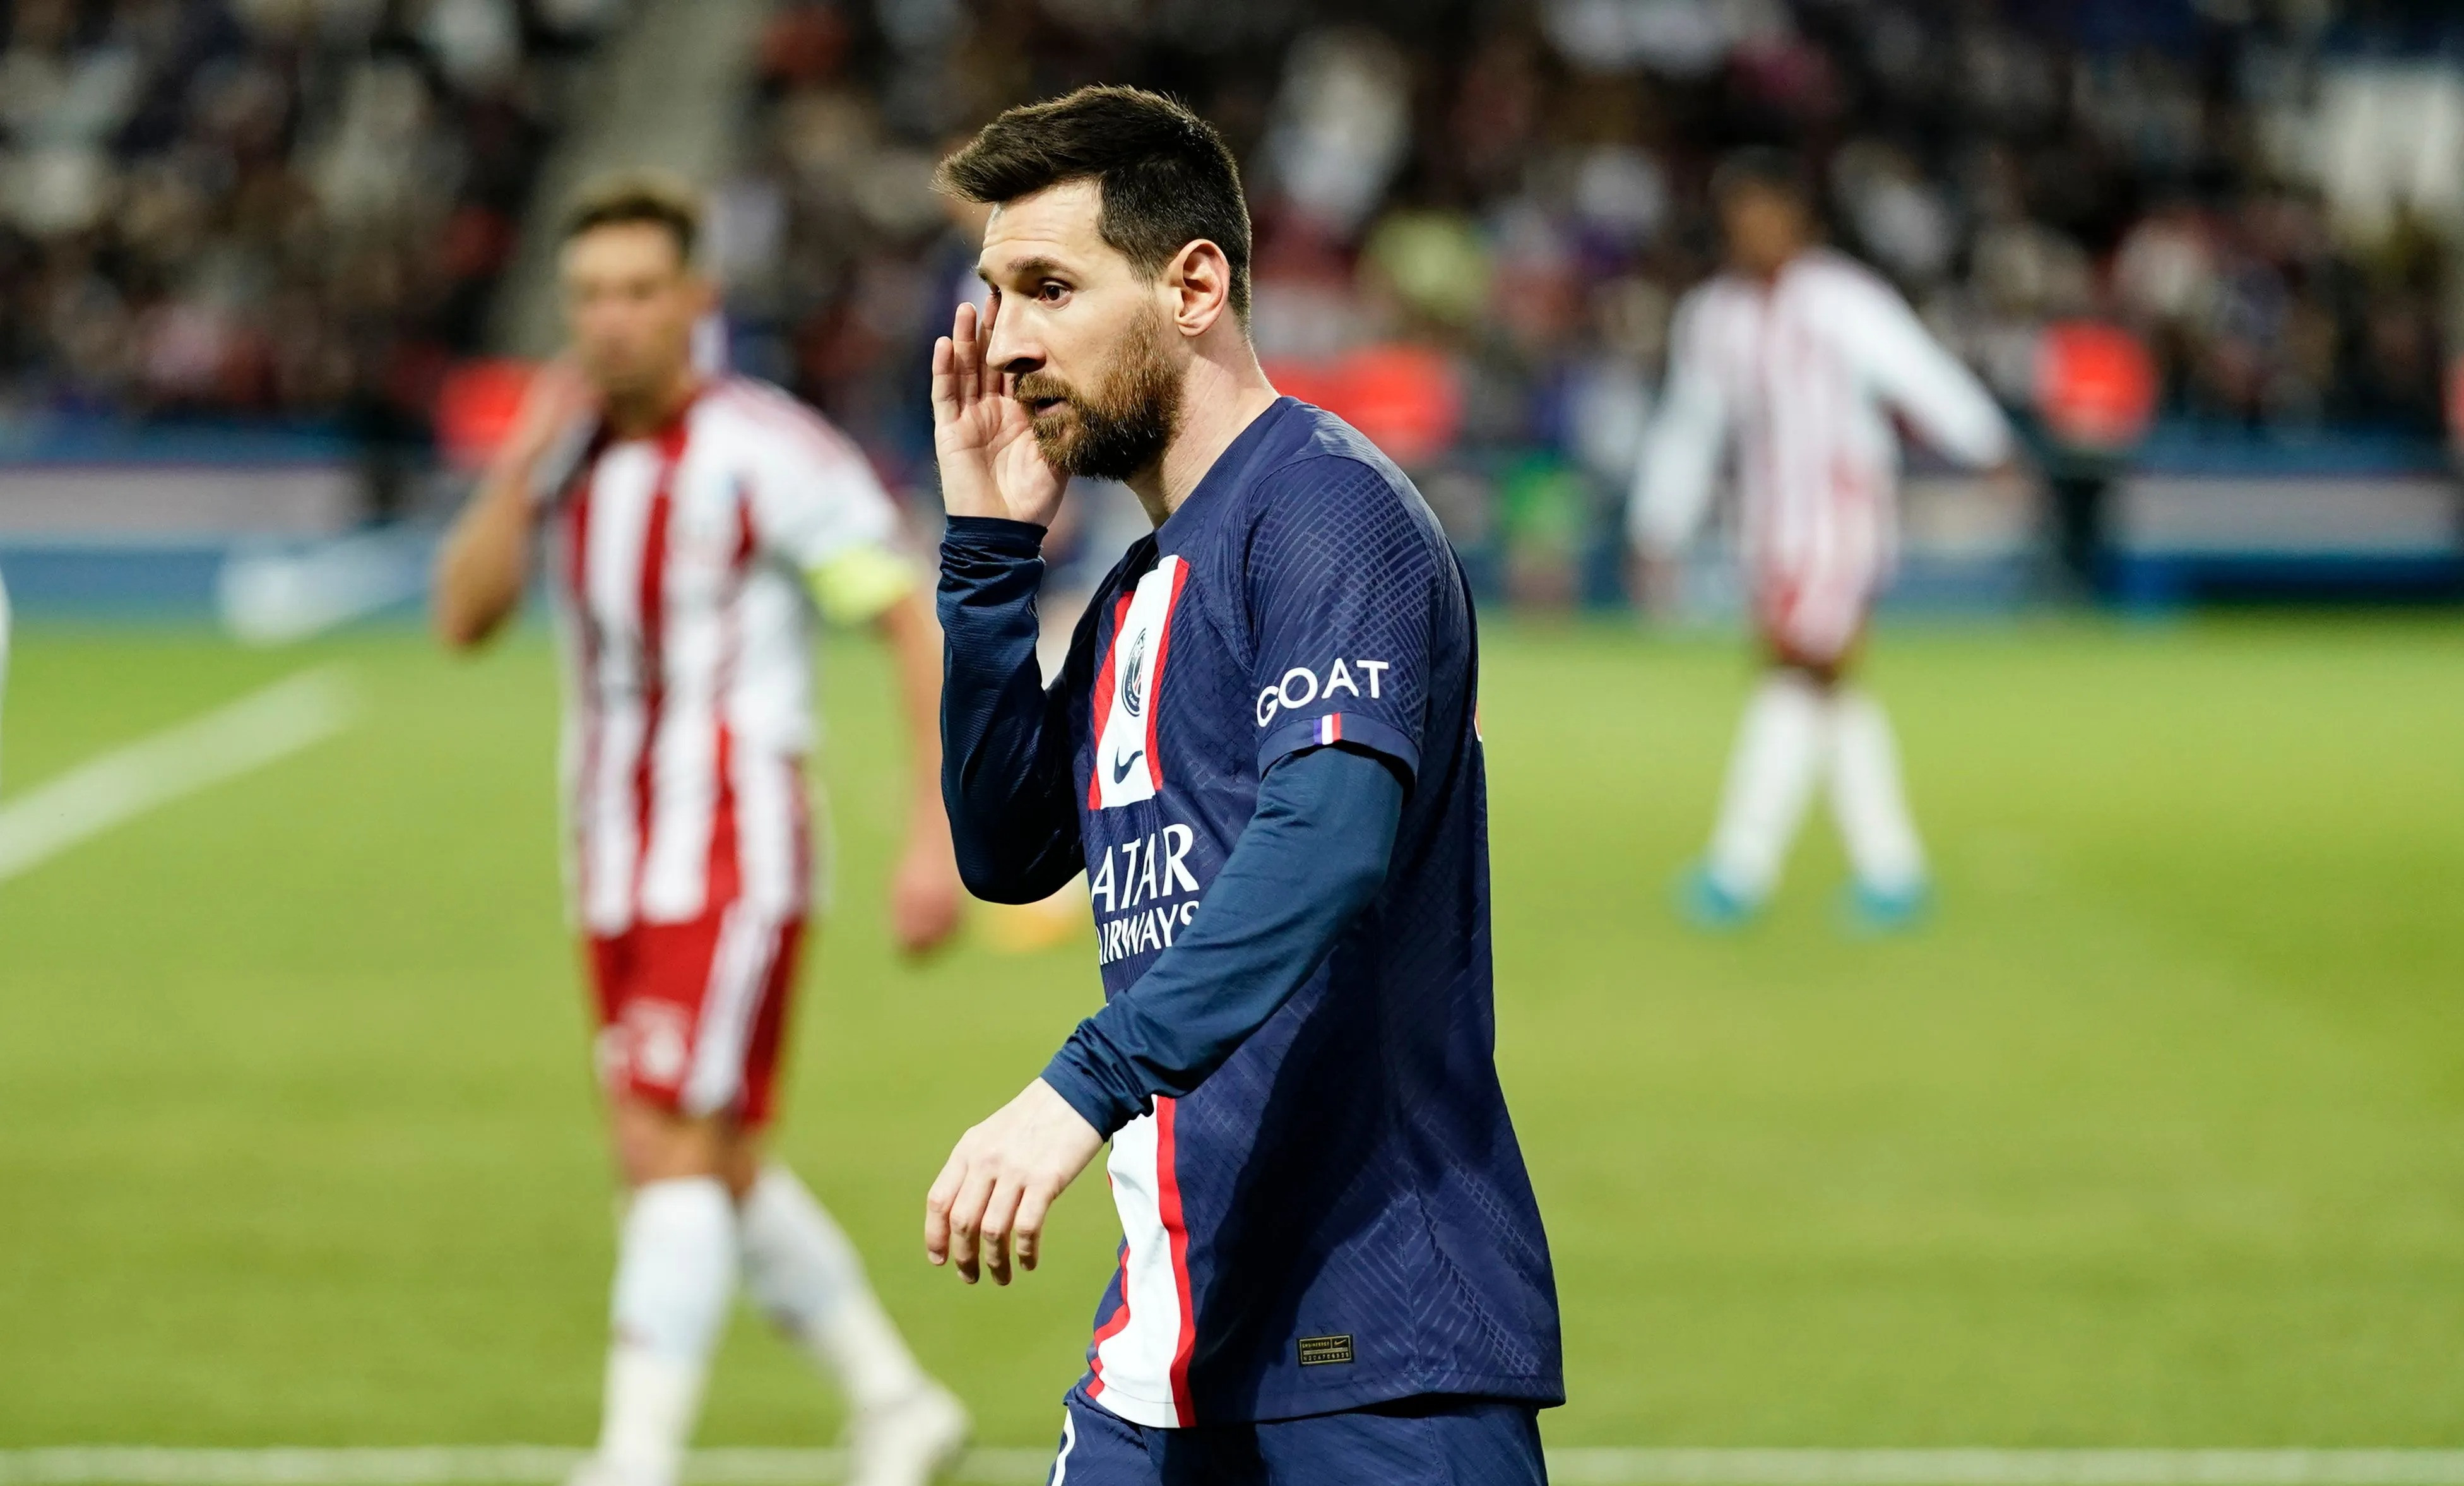 Người Pháp xấu hổ vì đối xử tệ với Messi